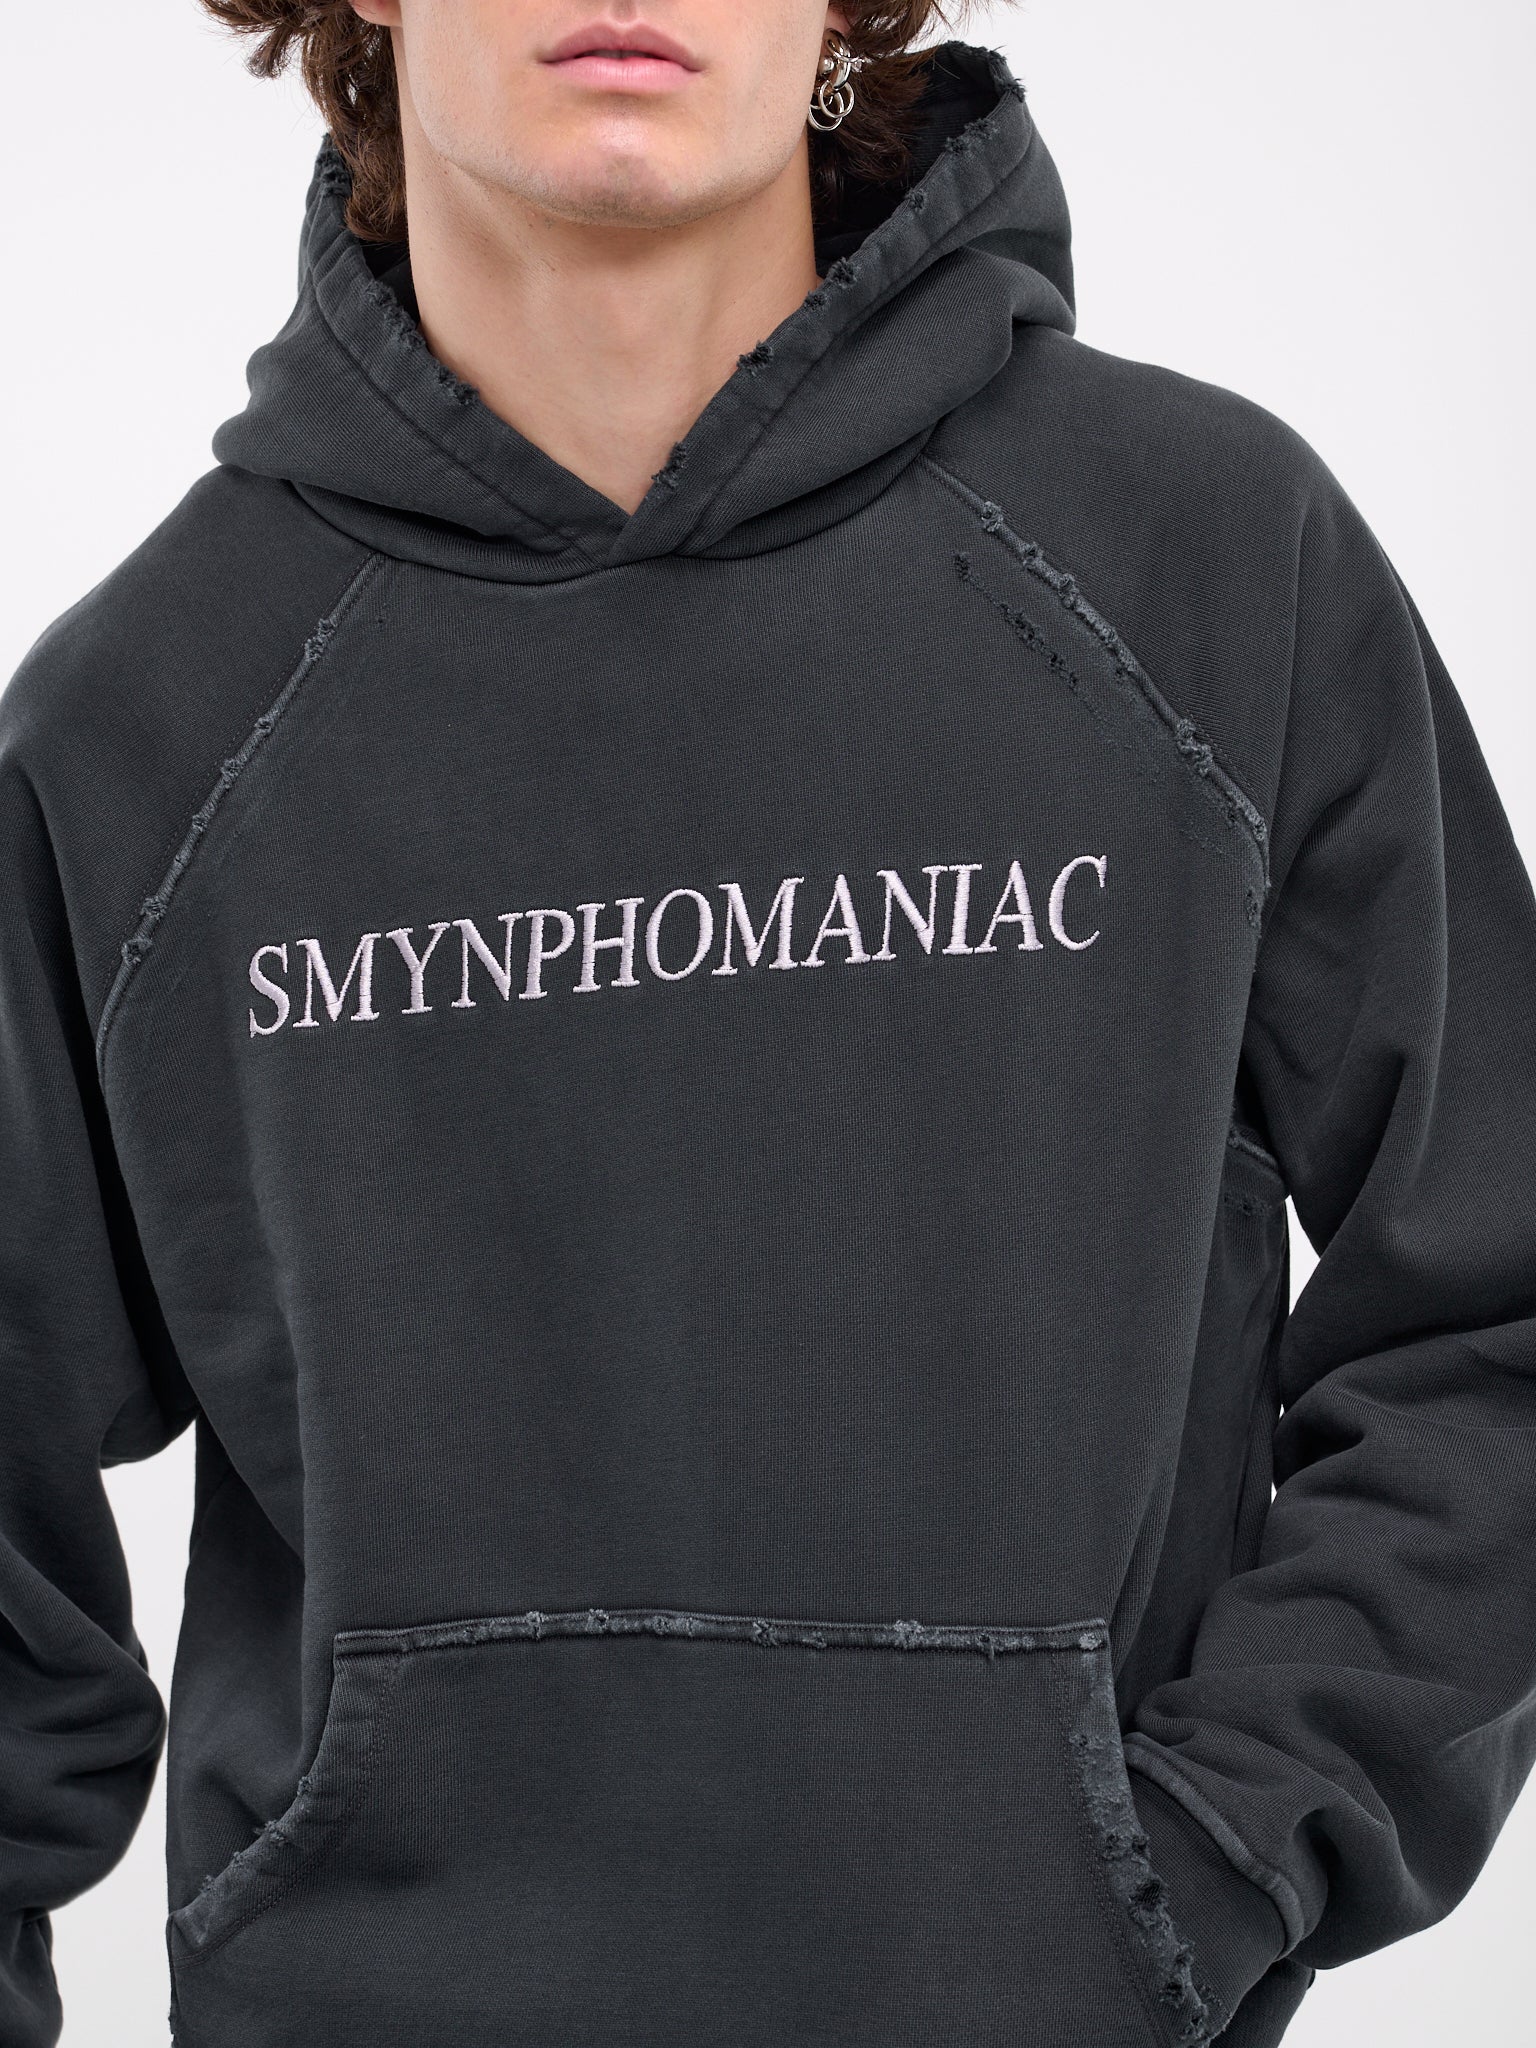 Smynphomaniac Hoodie (SMYNPHOMANIAC-WASHED-BLACK)